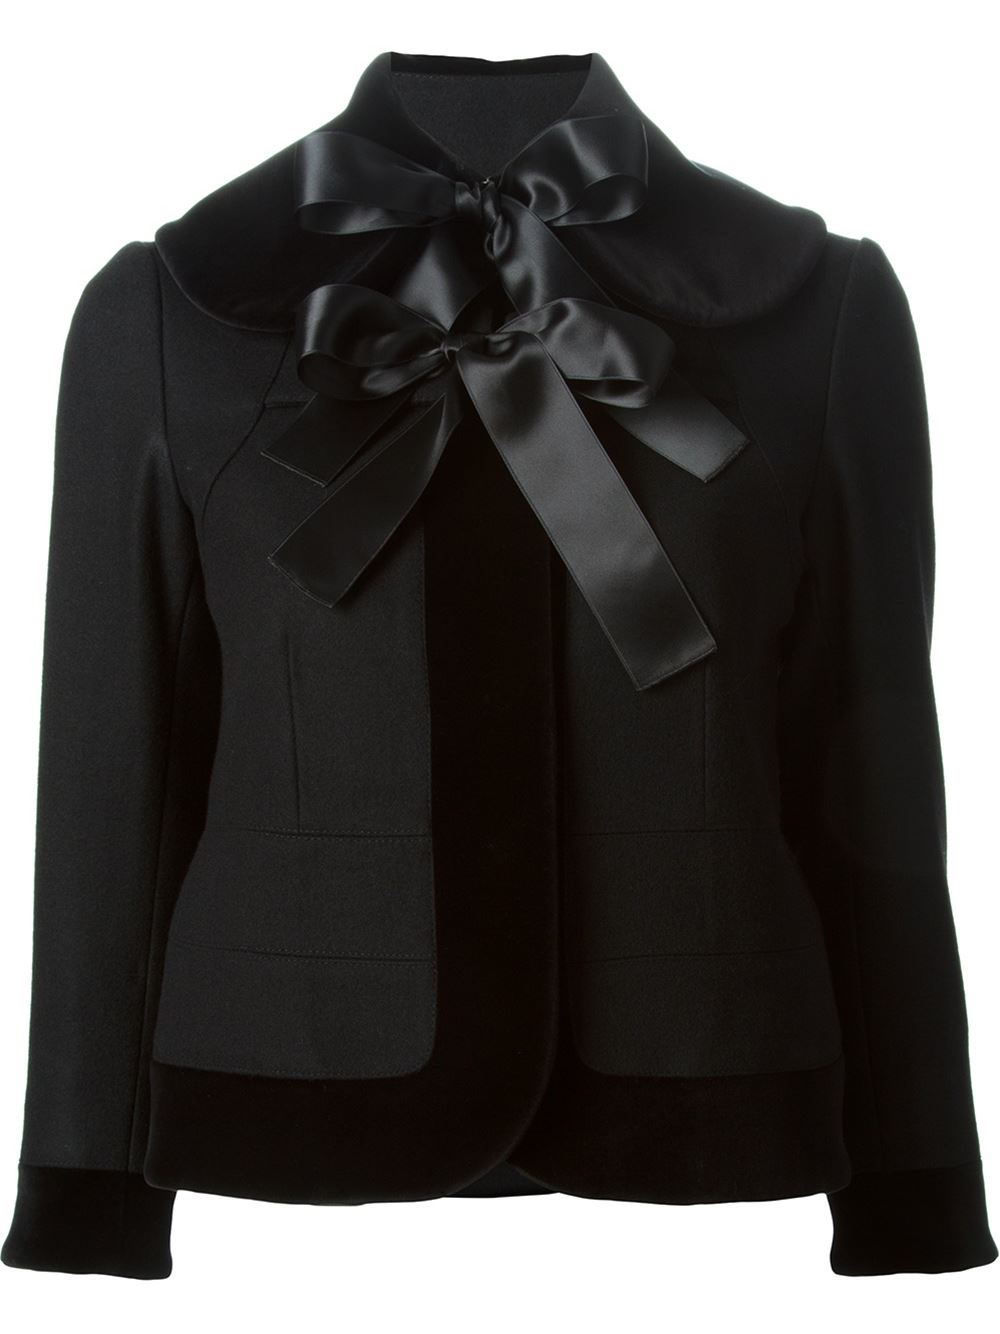 Lyst - Alexander Mcqueen Bow Tie Jacket in Black